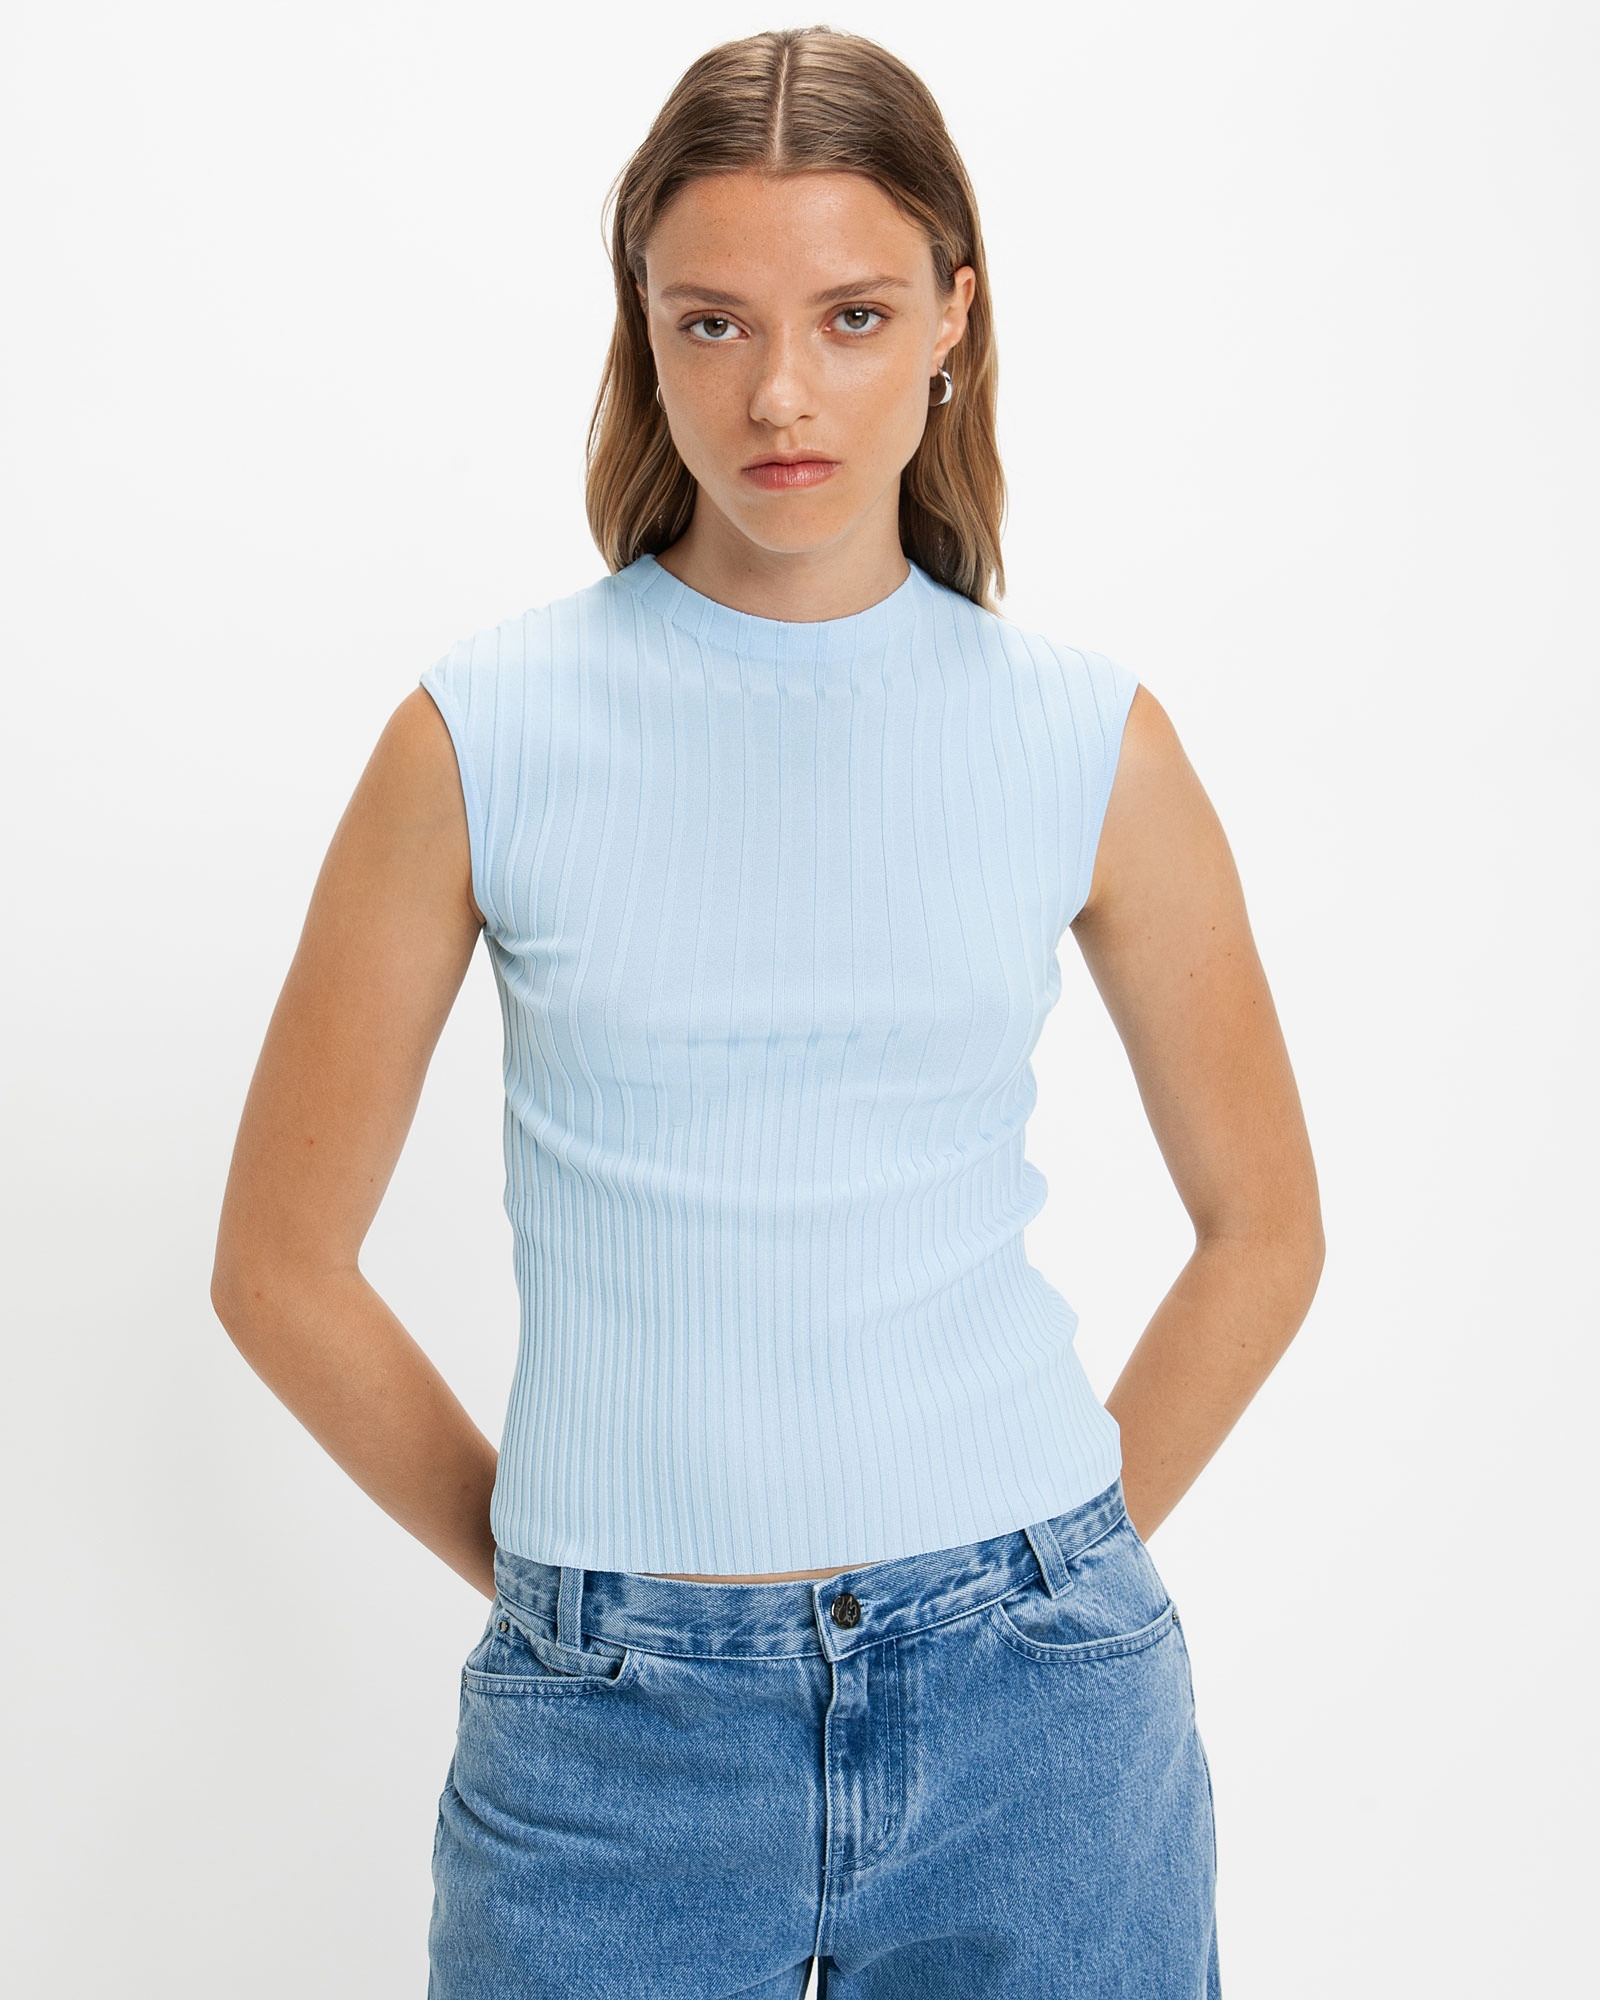 Multi Rib Knit Tank  Buy Knitwear Online - Cue